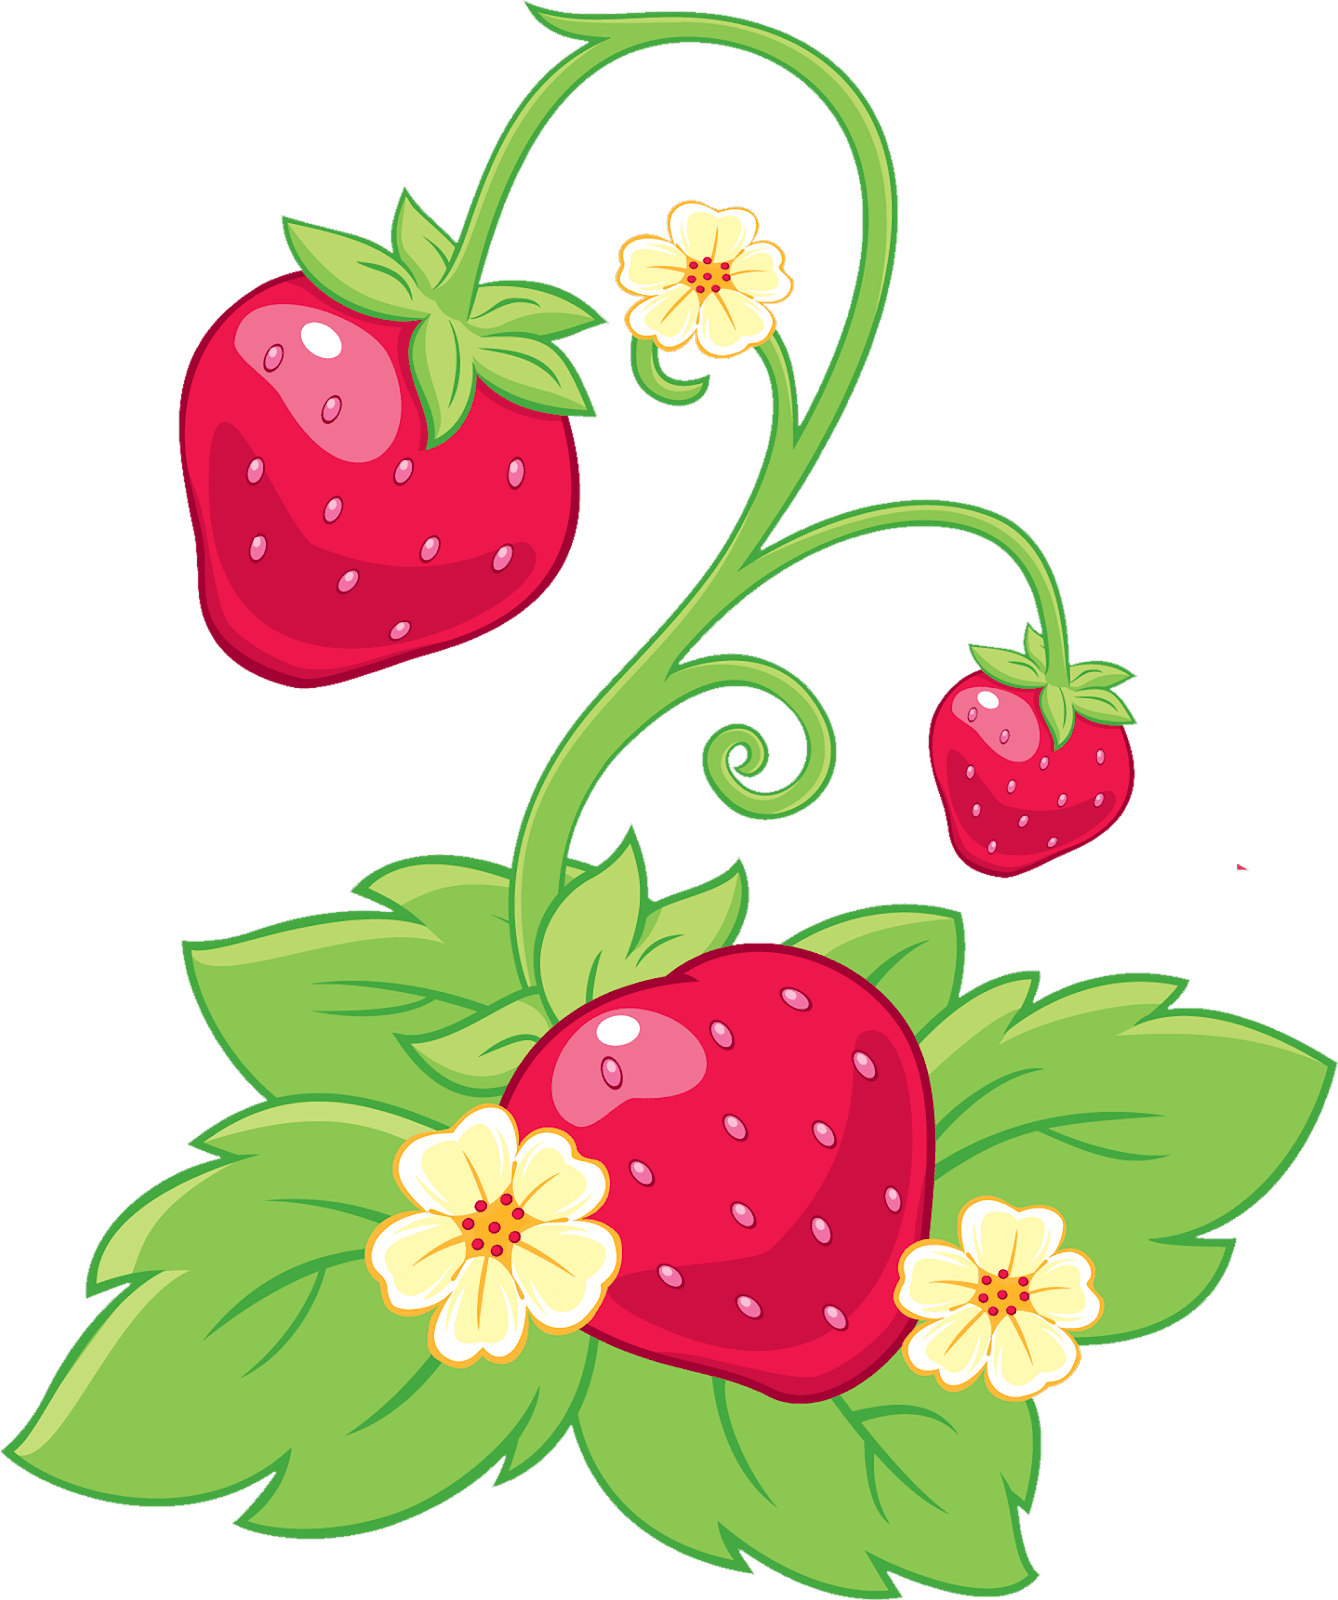 strawberry shortcake - rosita fresita -ren irudi handiak, png formatuko hondarrean